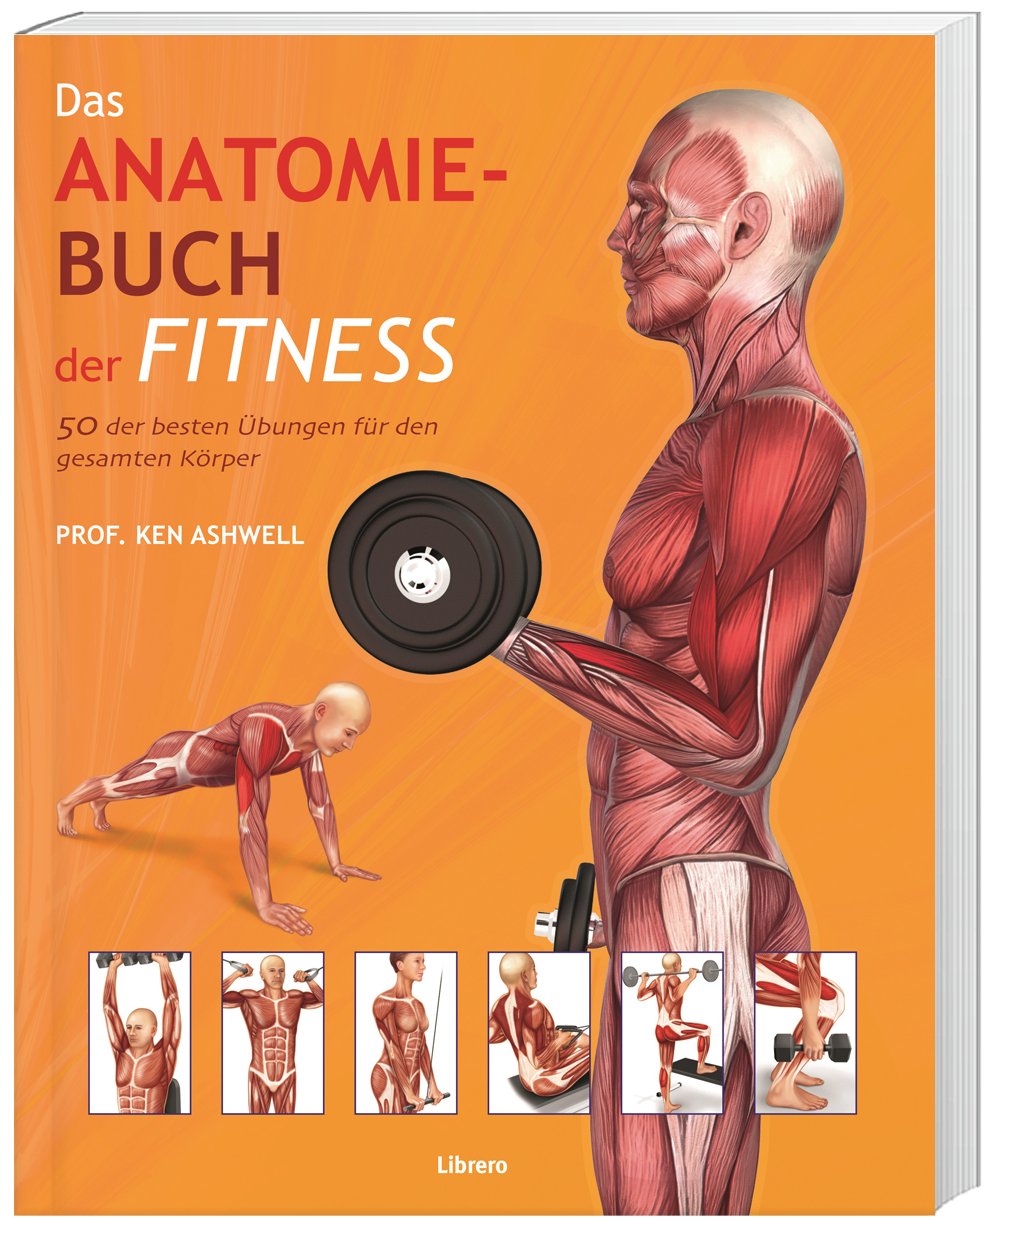 Das Anatomie-Buch der Fitness 50 der besten Übungen für den gesamten Körper 